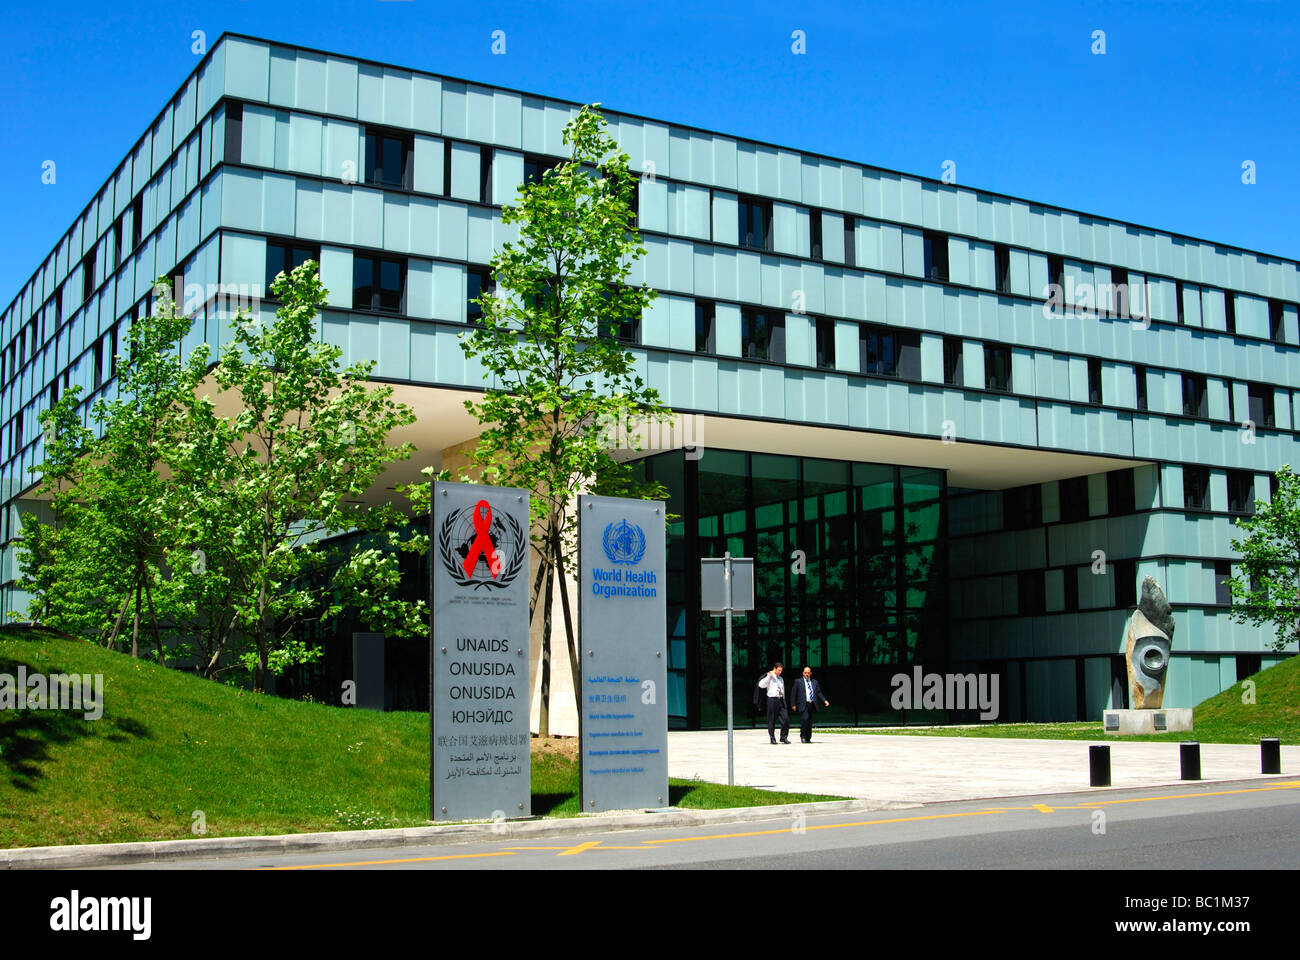 La sede de la Organización Mundial de la Salud (OMS) y ONUSIDA Ginebra, Suiza Foto de stock